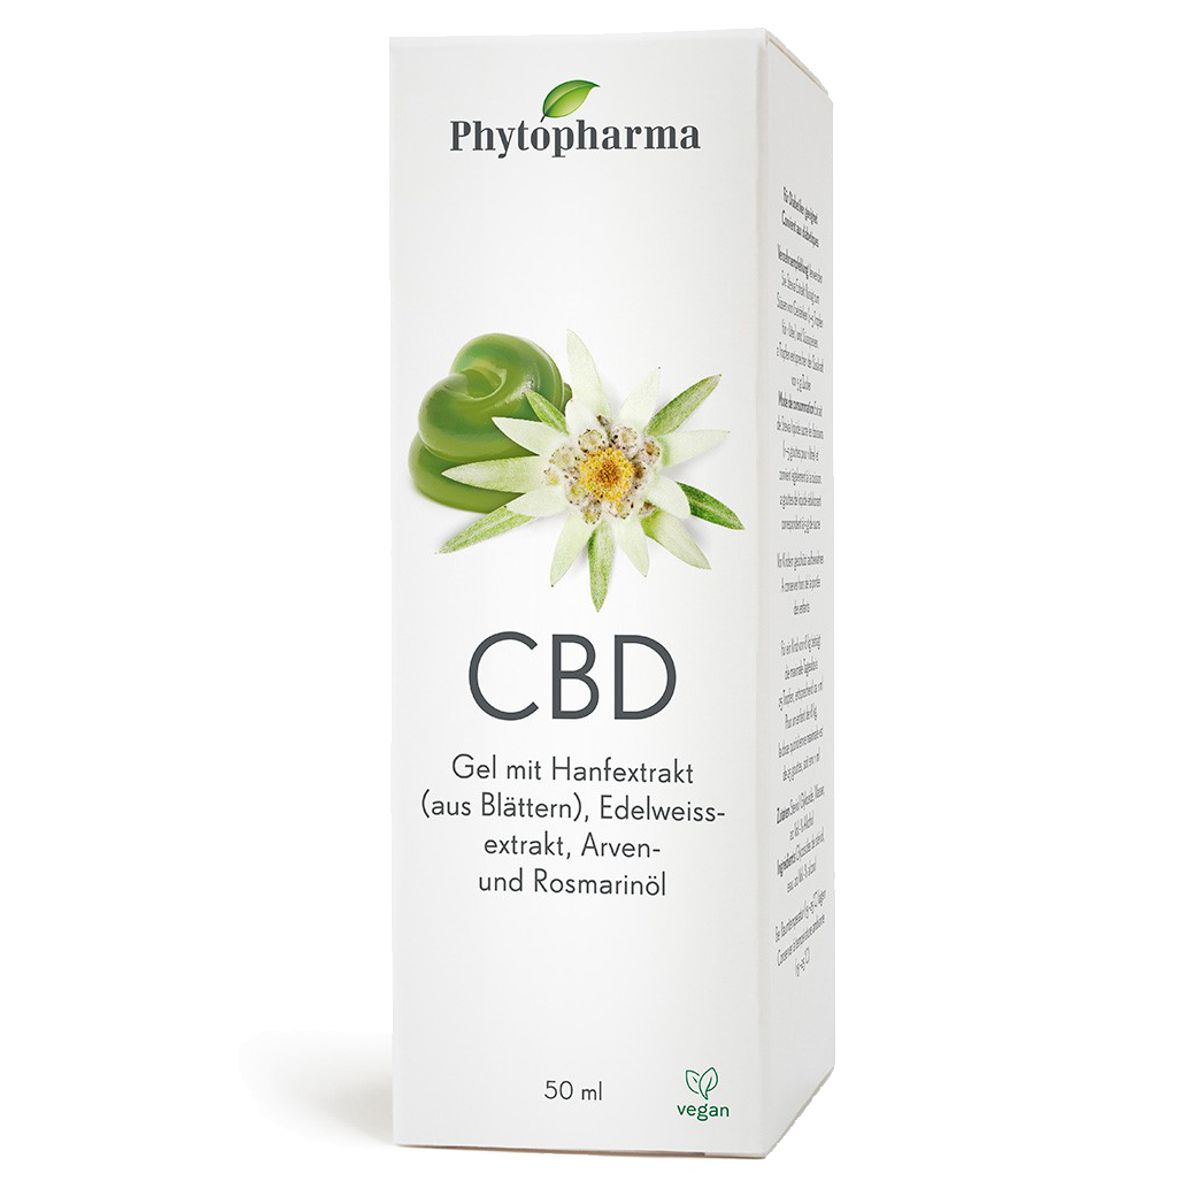 Phytopharma CBD Gel Dispenser 50 ml